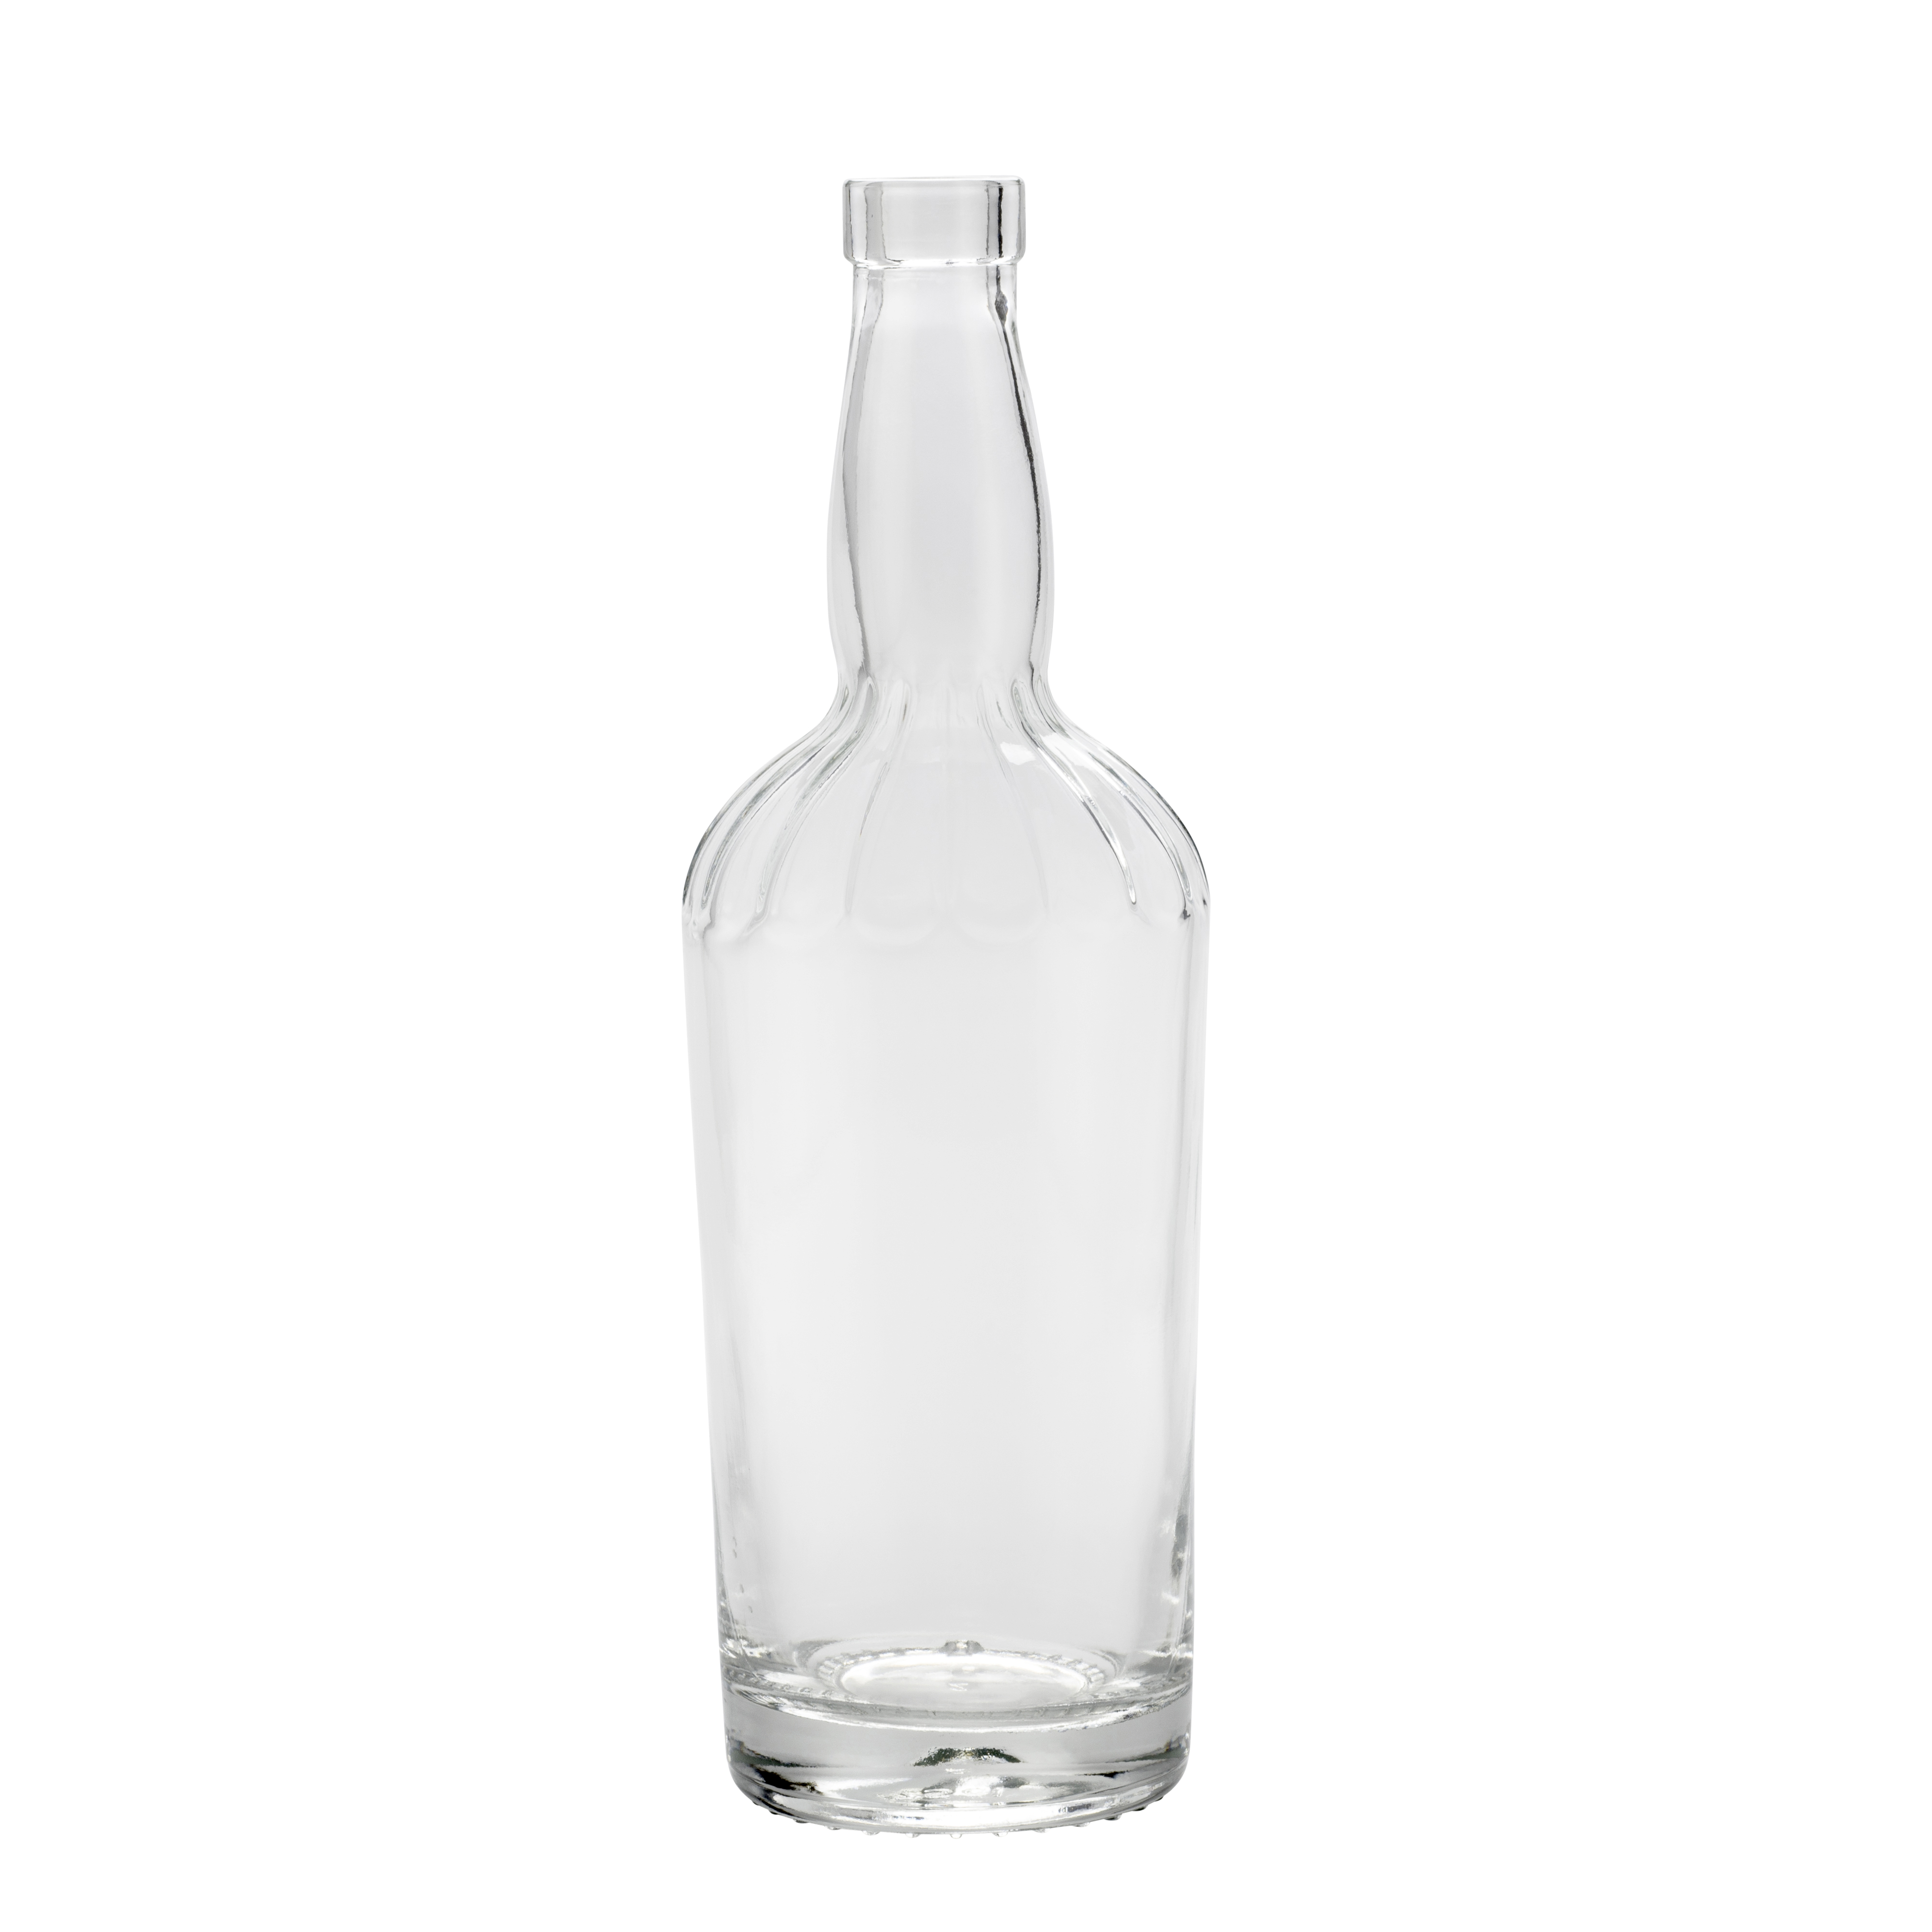 Fancy glass bottle